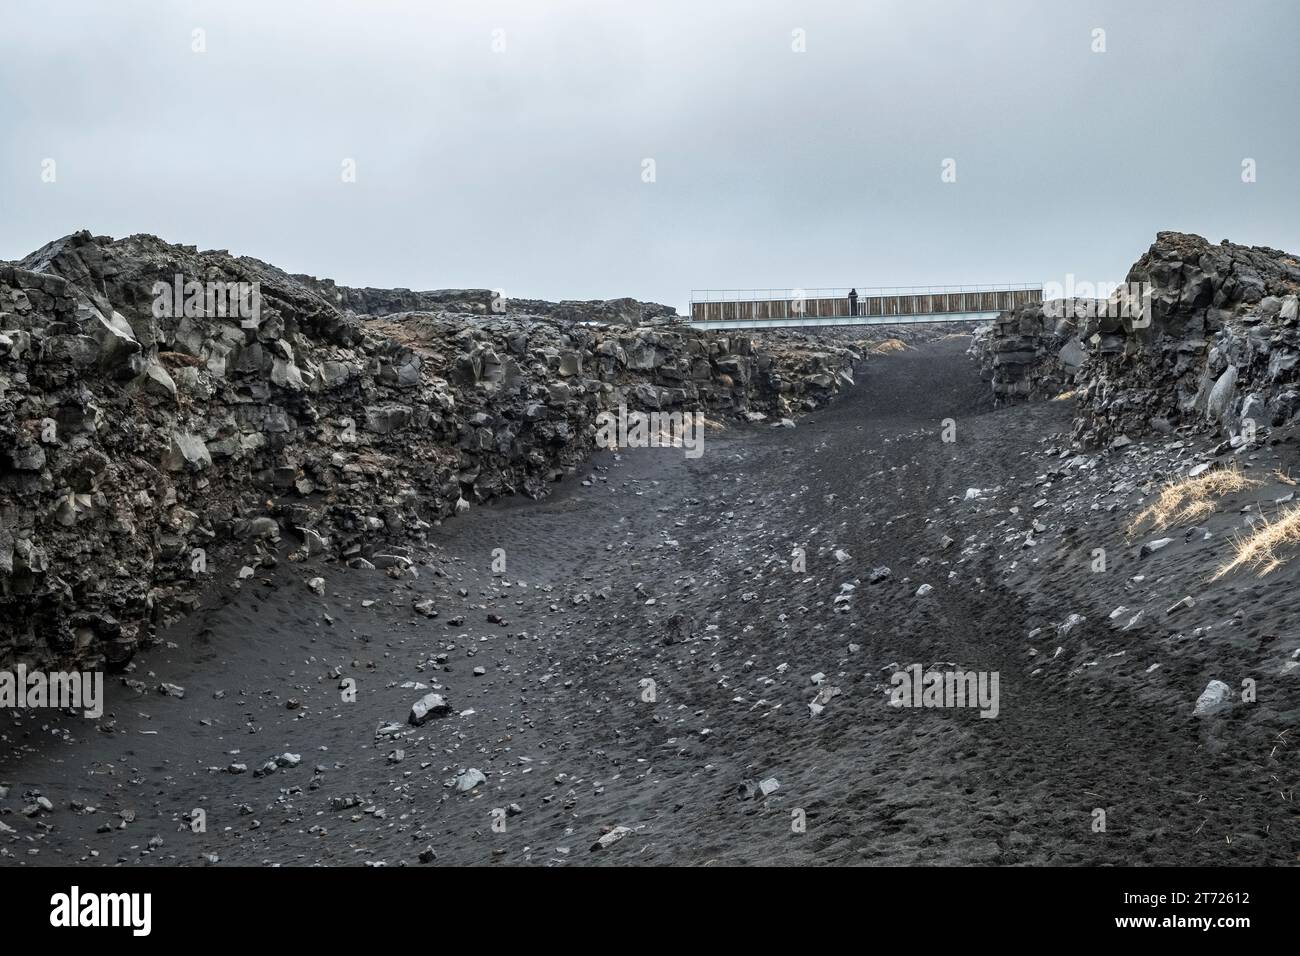 Die Brücke zwischen den Kontinenten bei Sandvik, Island. Sie überquert die langsam wachsende Lücke zwischen den tektonischen Platten Europas und Nordamerikas Stockfoto